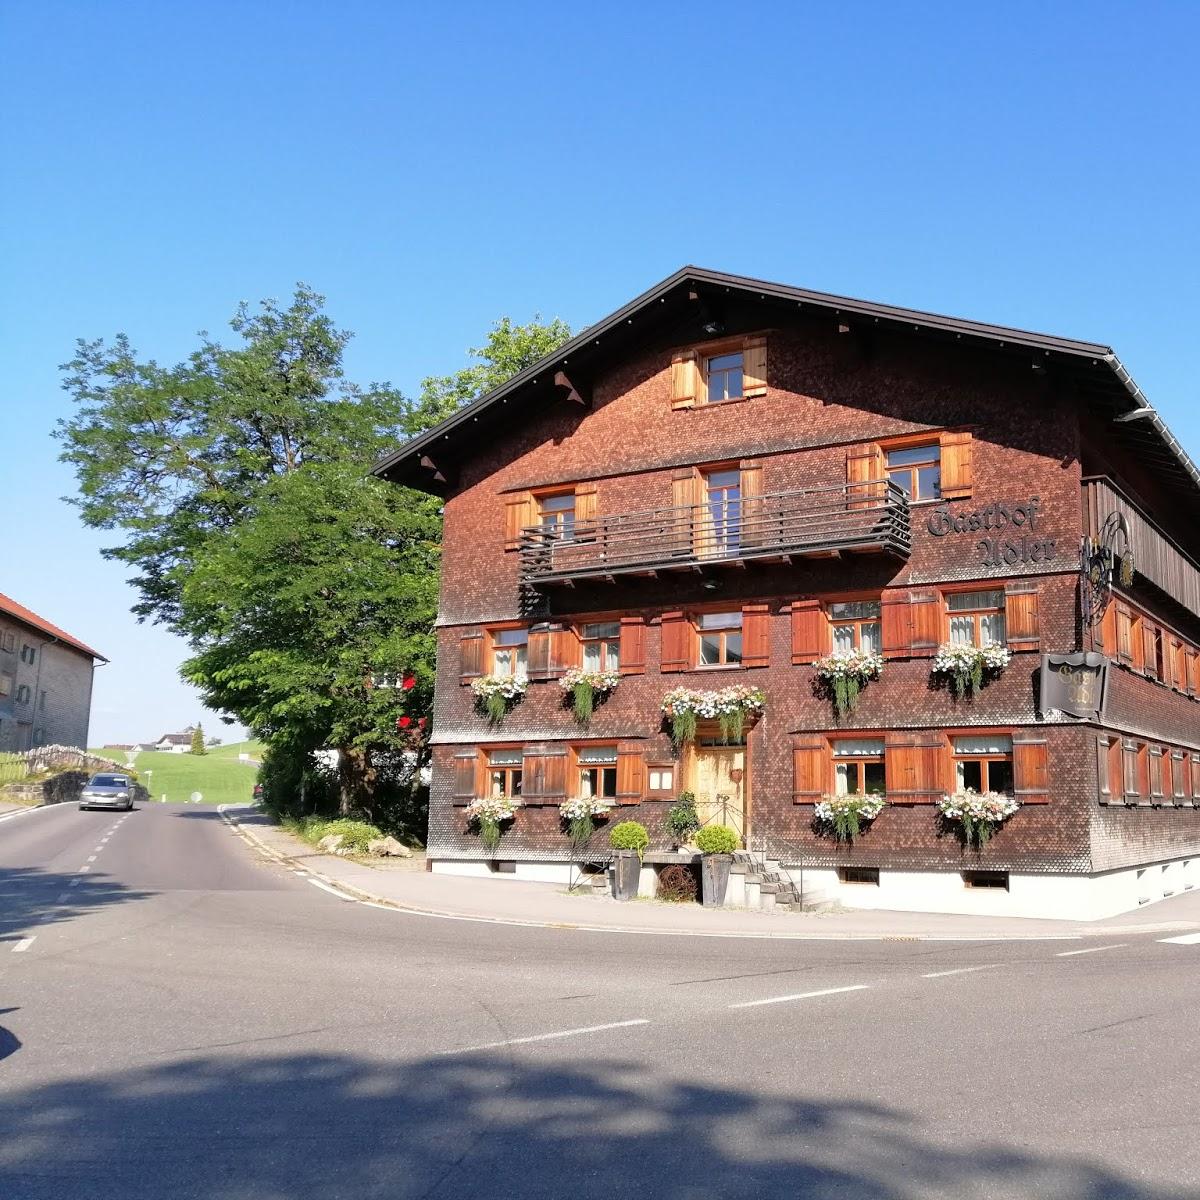 Restaurant "Gasthof Adler" in Krumbach